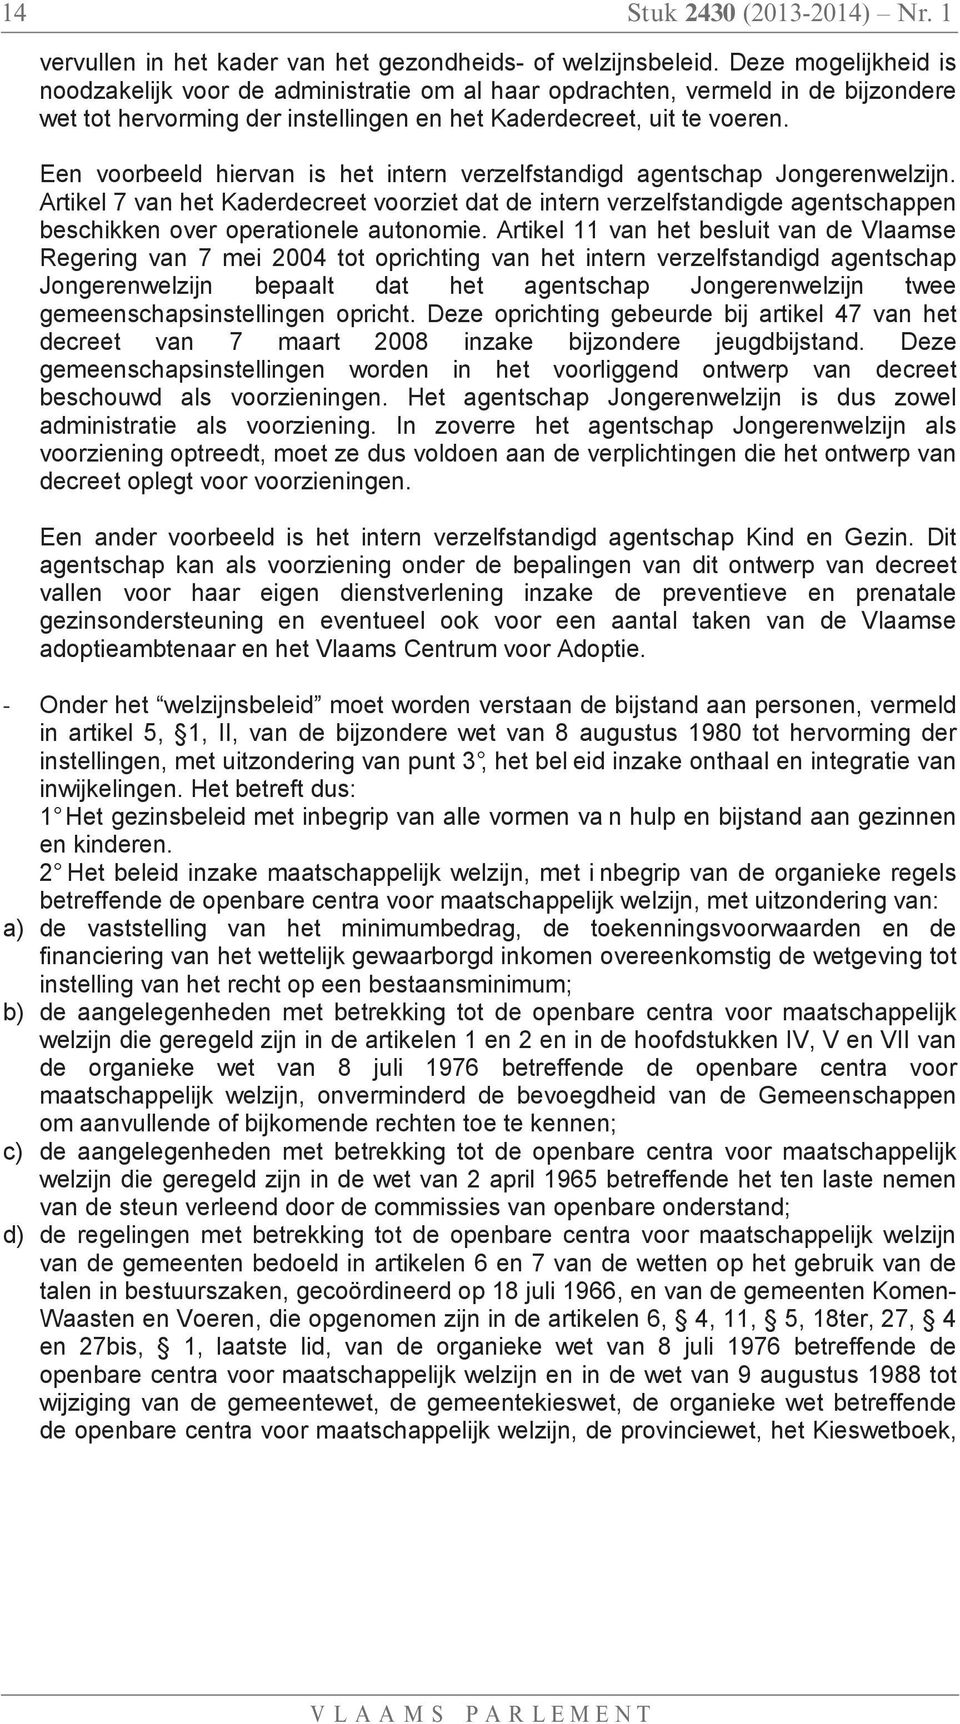 Een voorbeeld hiervan is het intern verzelfstandigd agentschap Jongerenwelzijn.